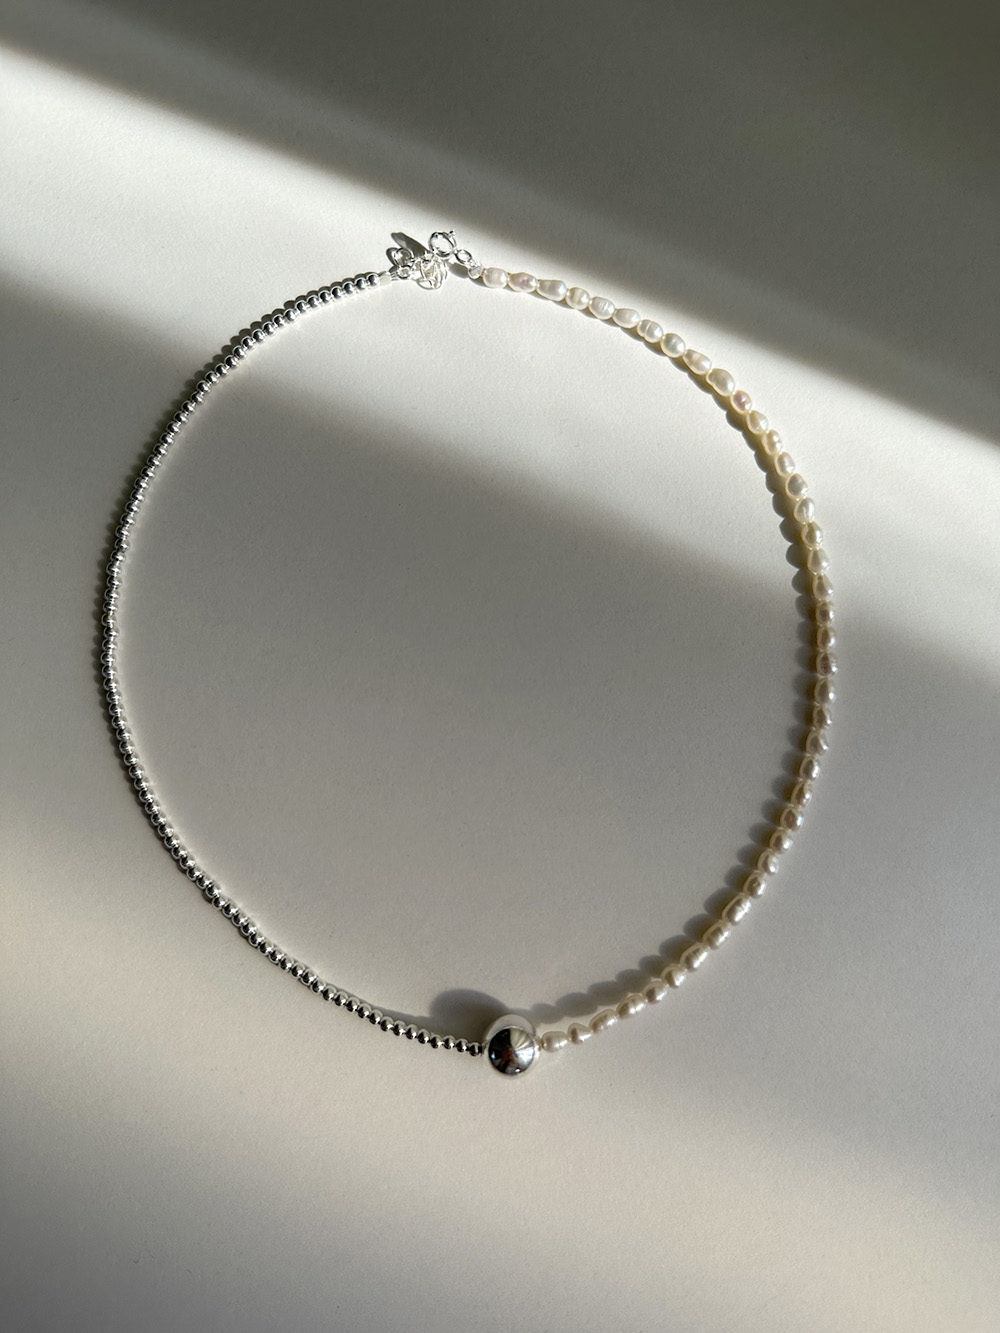 [92.5 silver] Center ball necklace